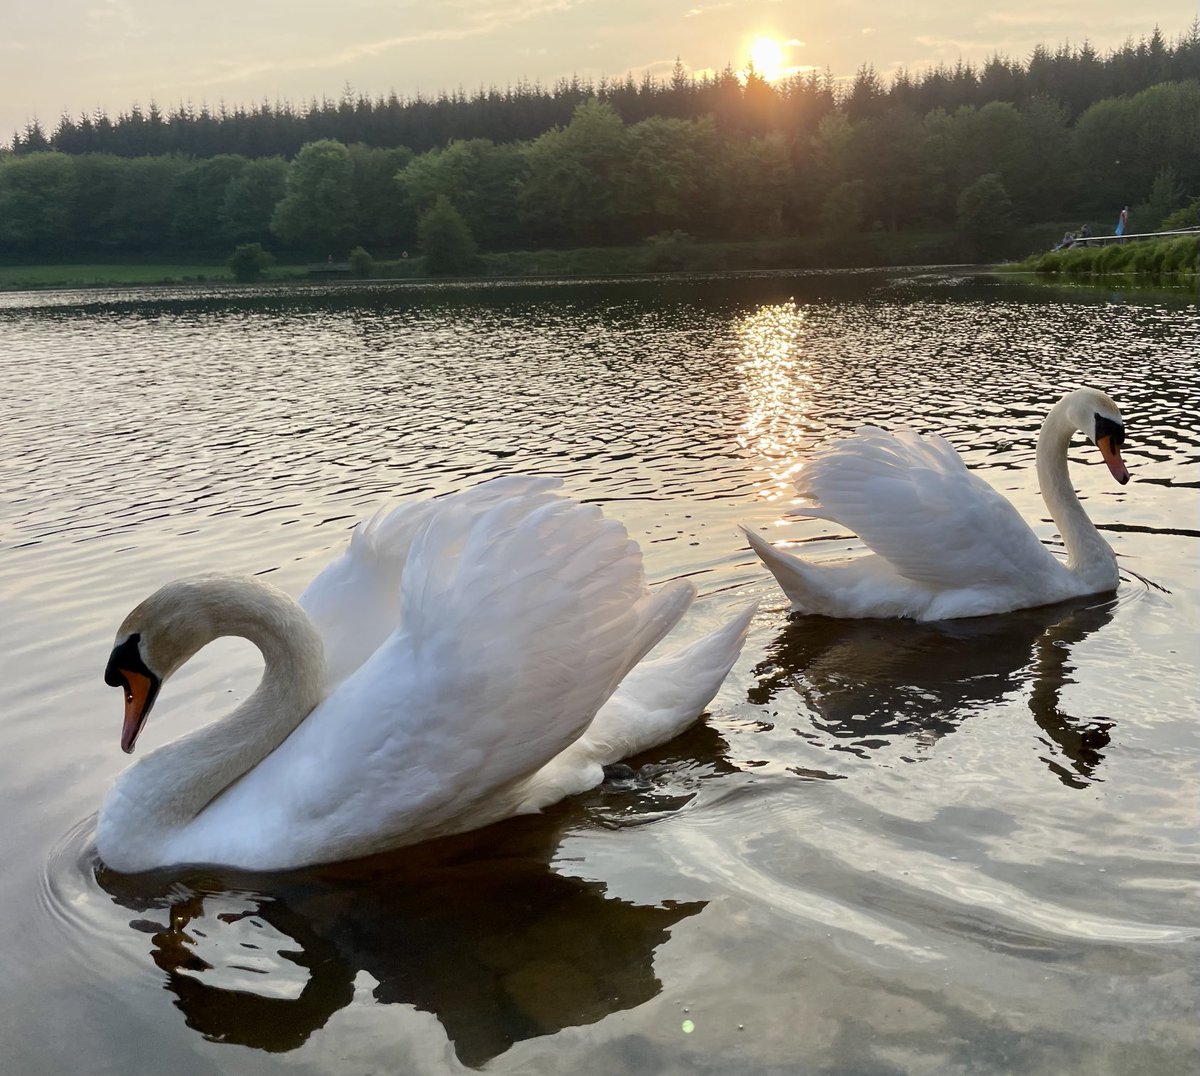 Sunset on swan lake tonight, Carrickfergus..